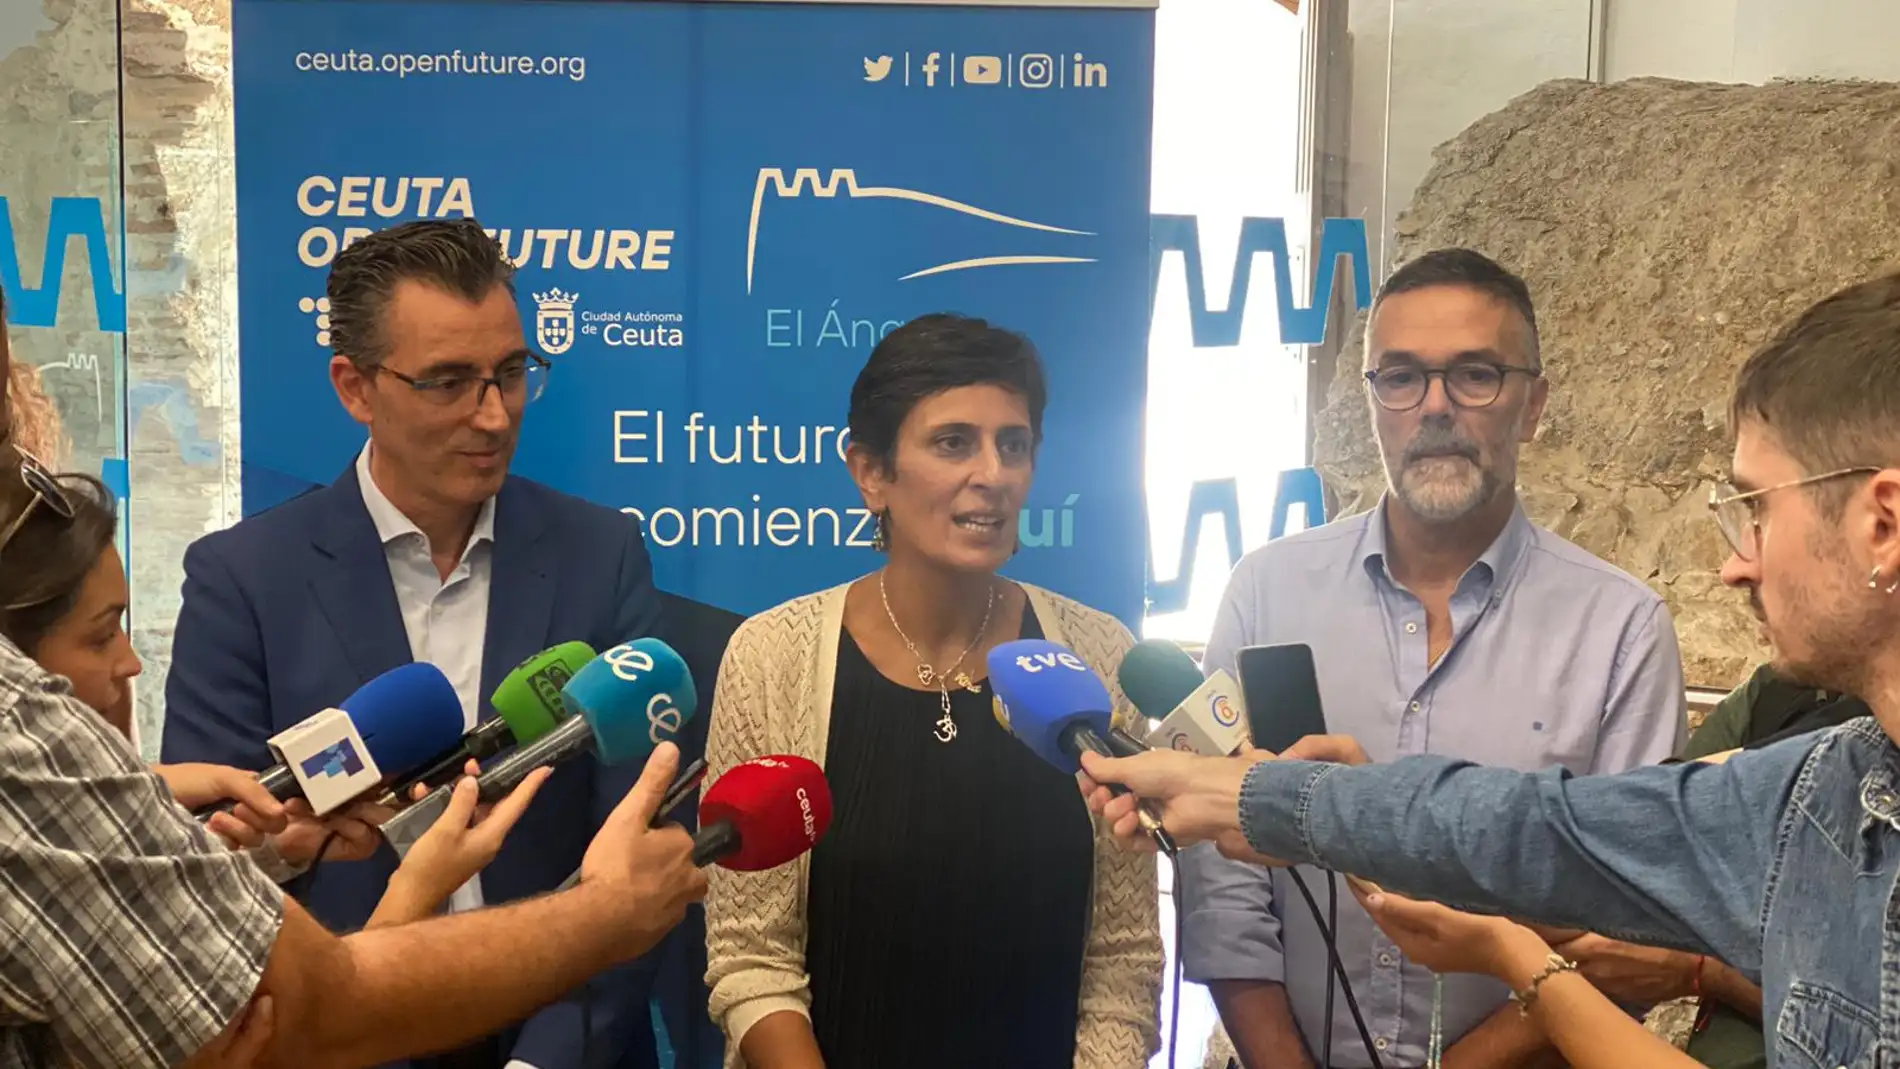 Ceuta Open Future